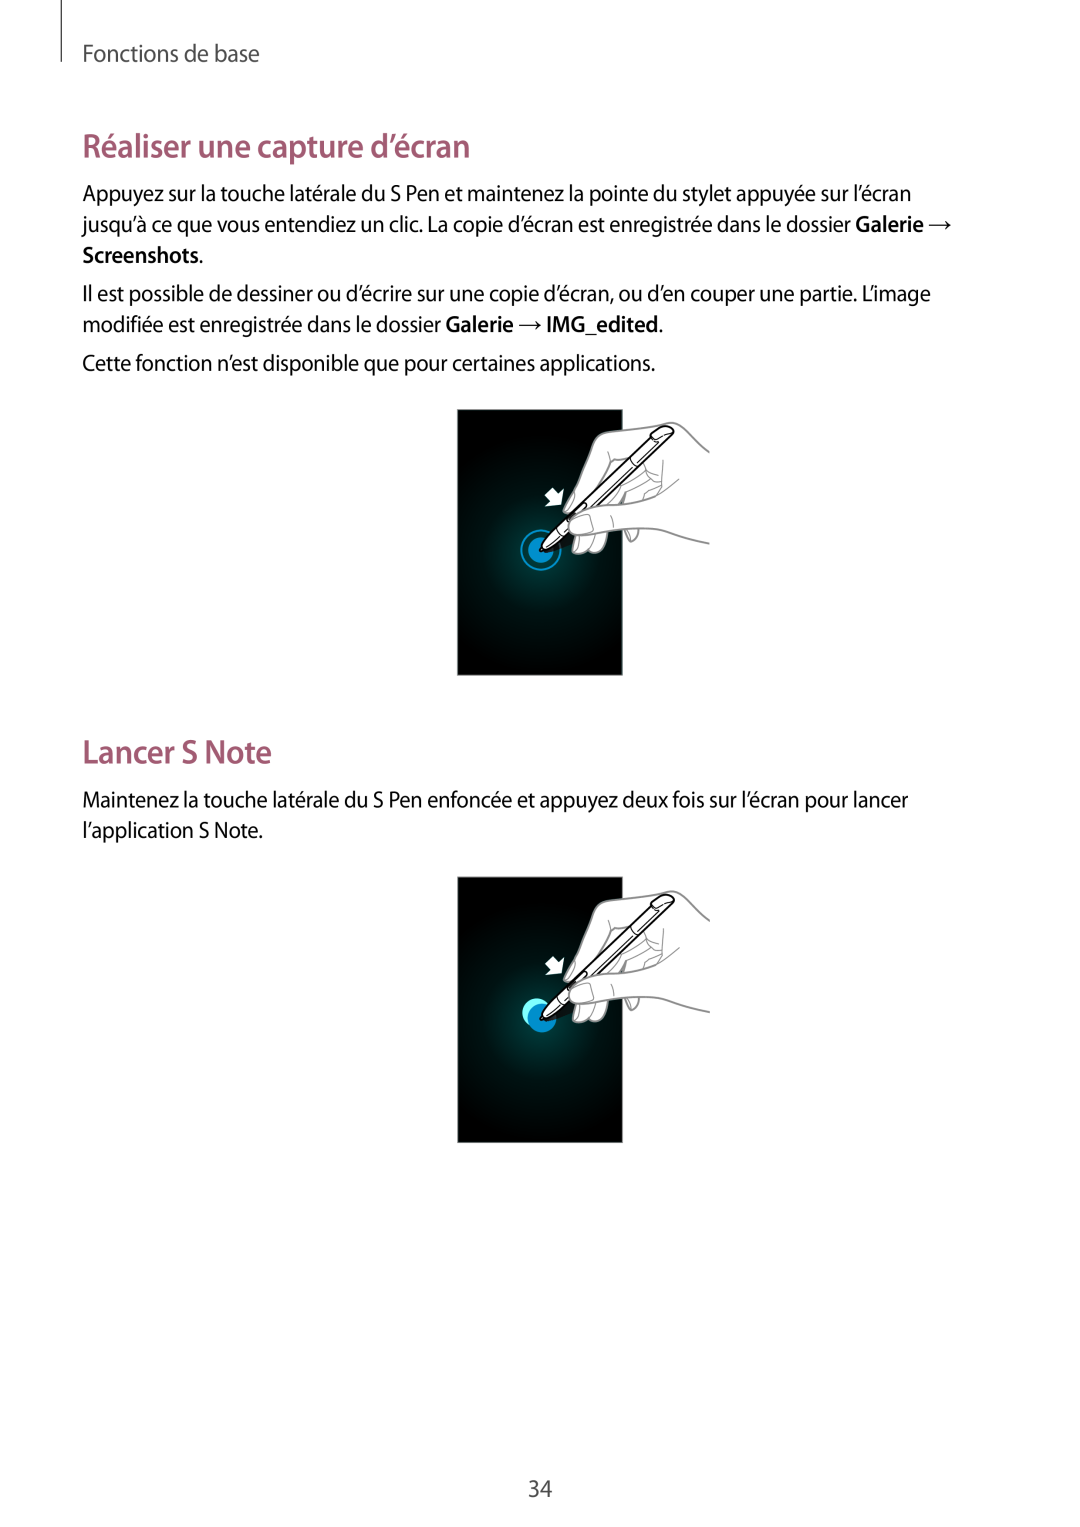 Samsung GT-N7105TADBOG, GT-N7105TADXEF, GT-N7105TADSFR manual Réaliser une capture d’écran, Lancer S Note, Fonctions de base 